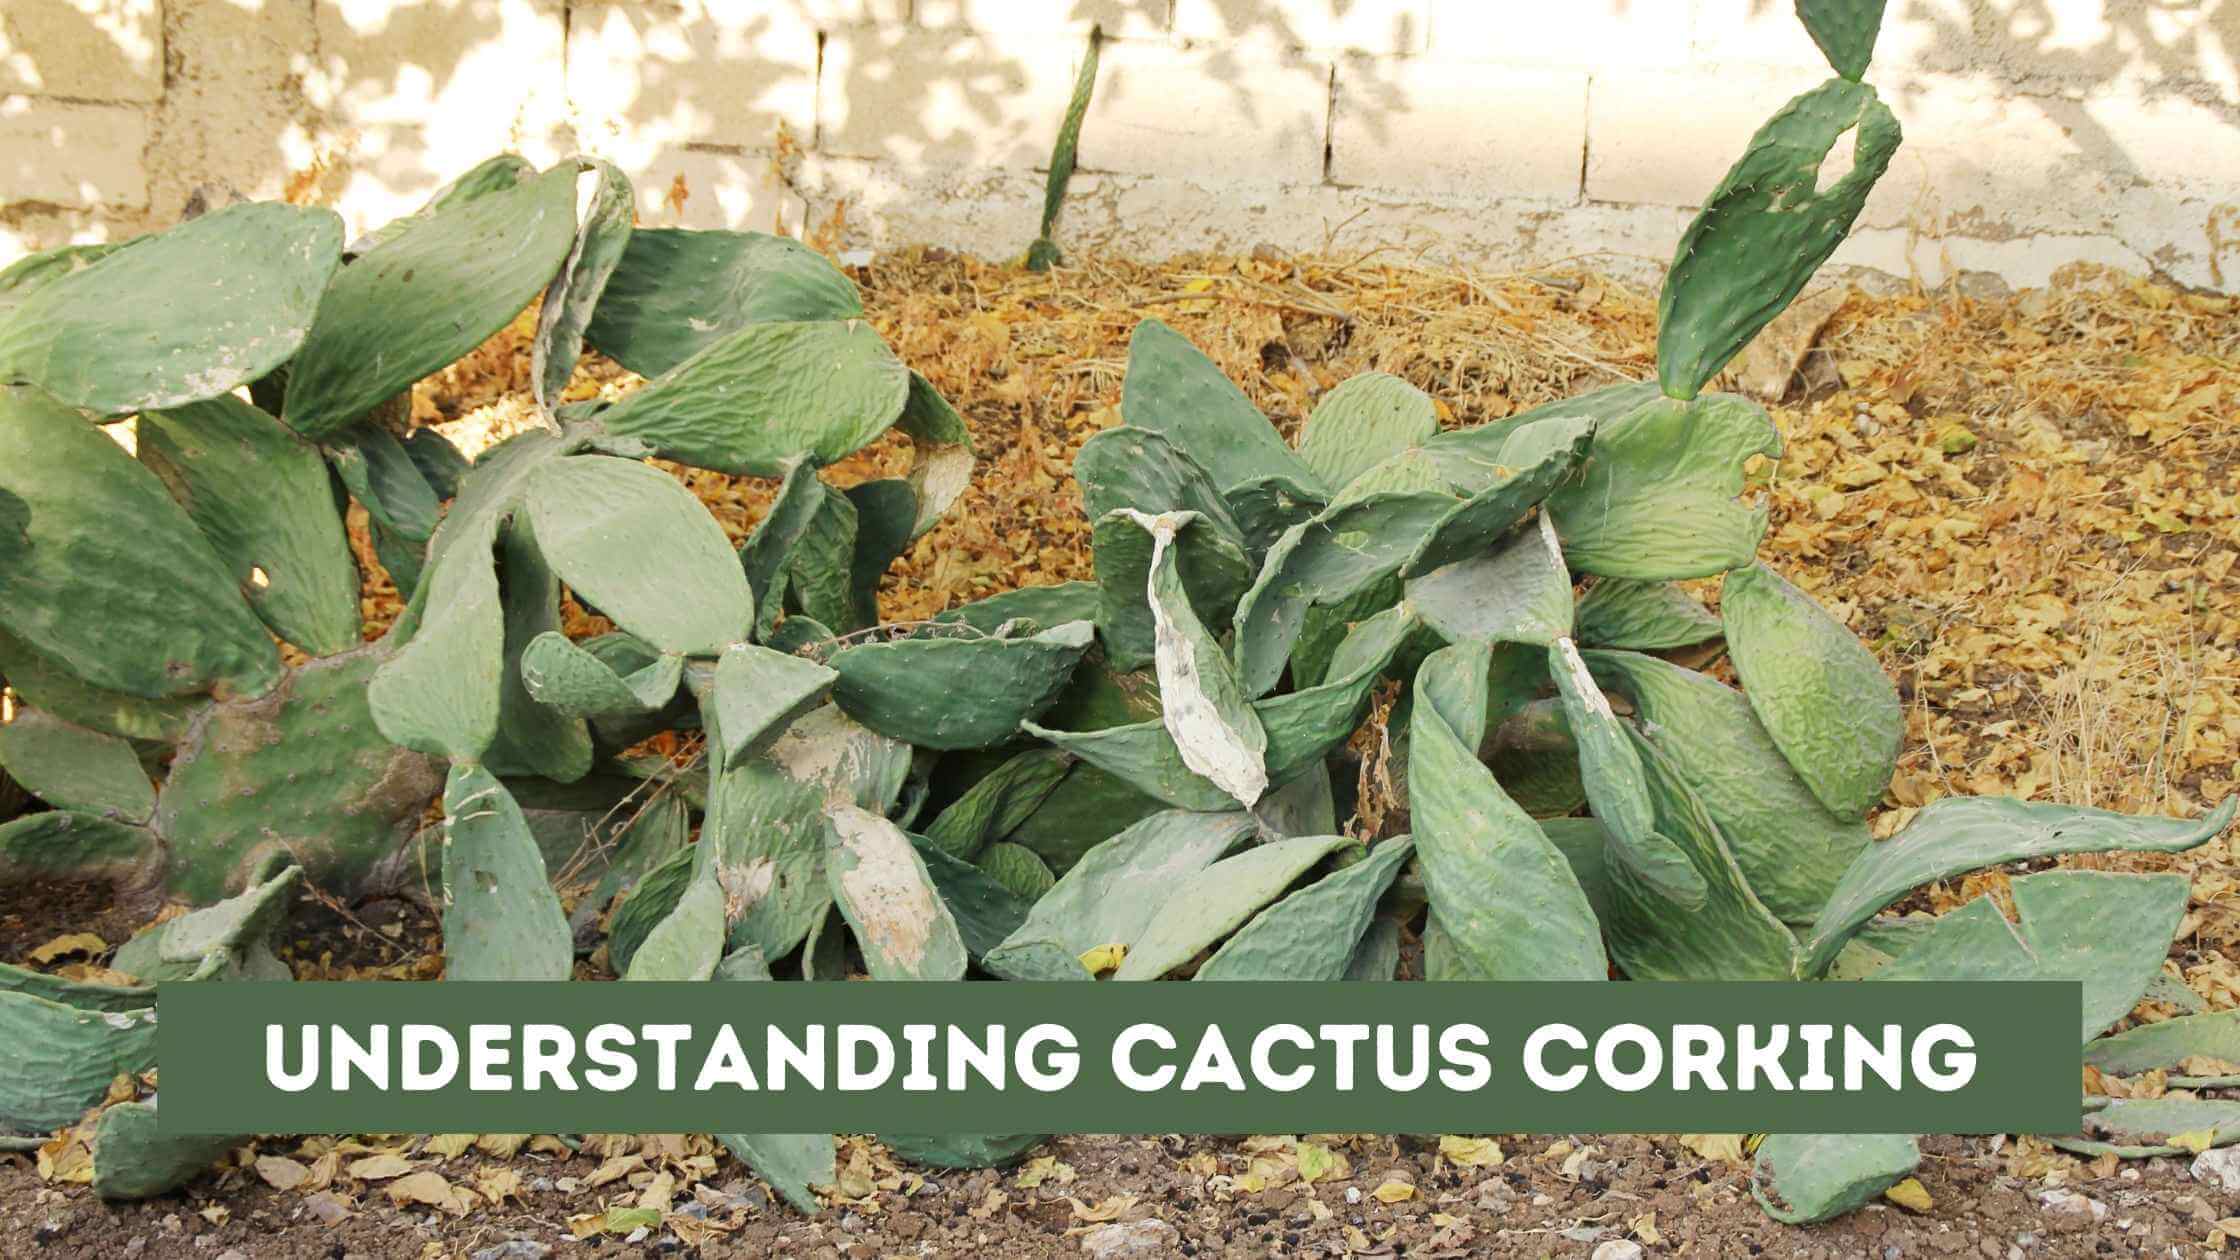 Cactus corking